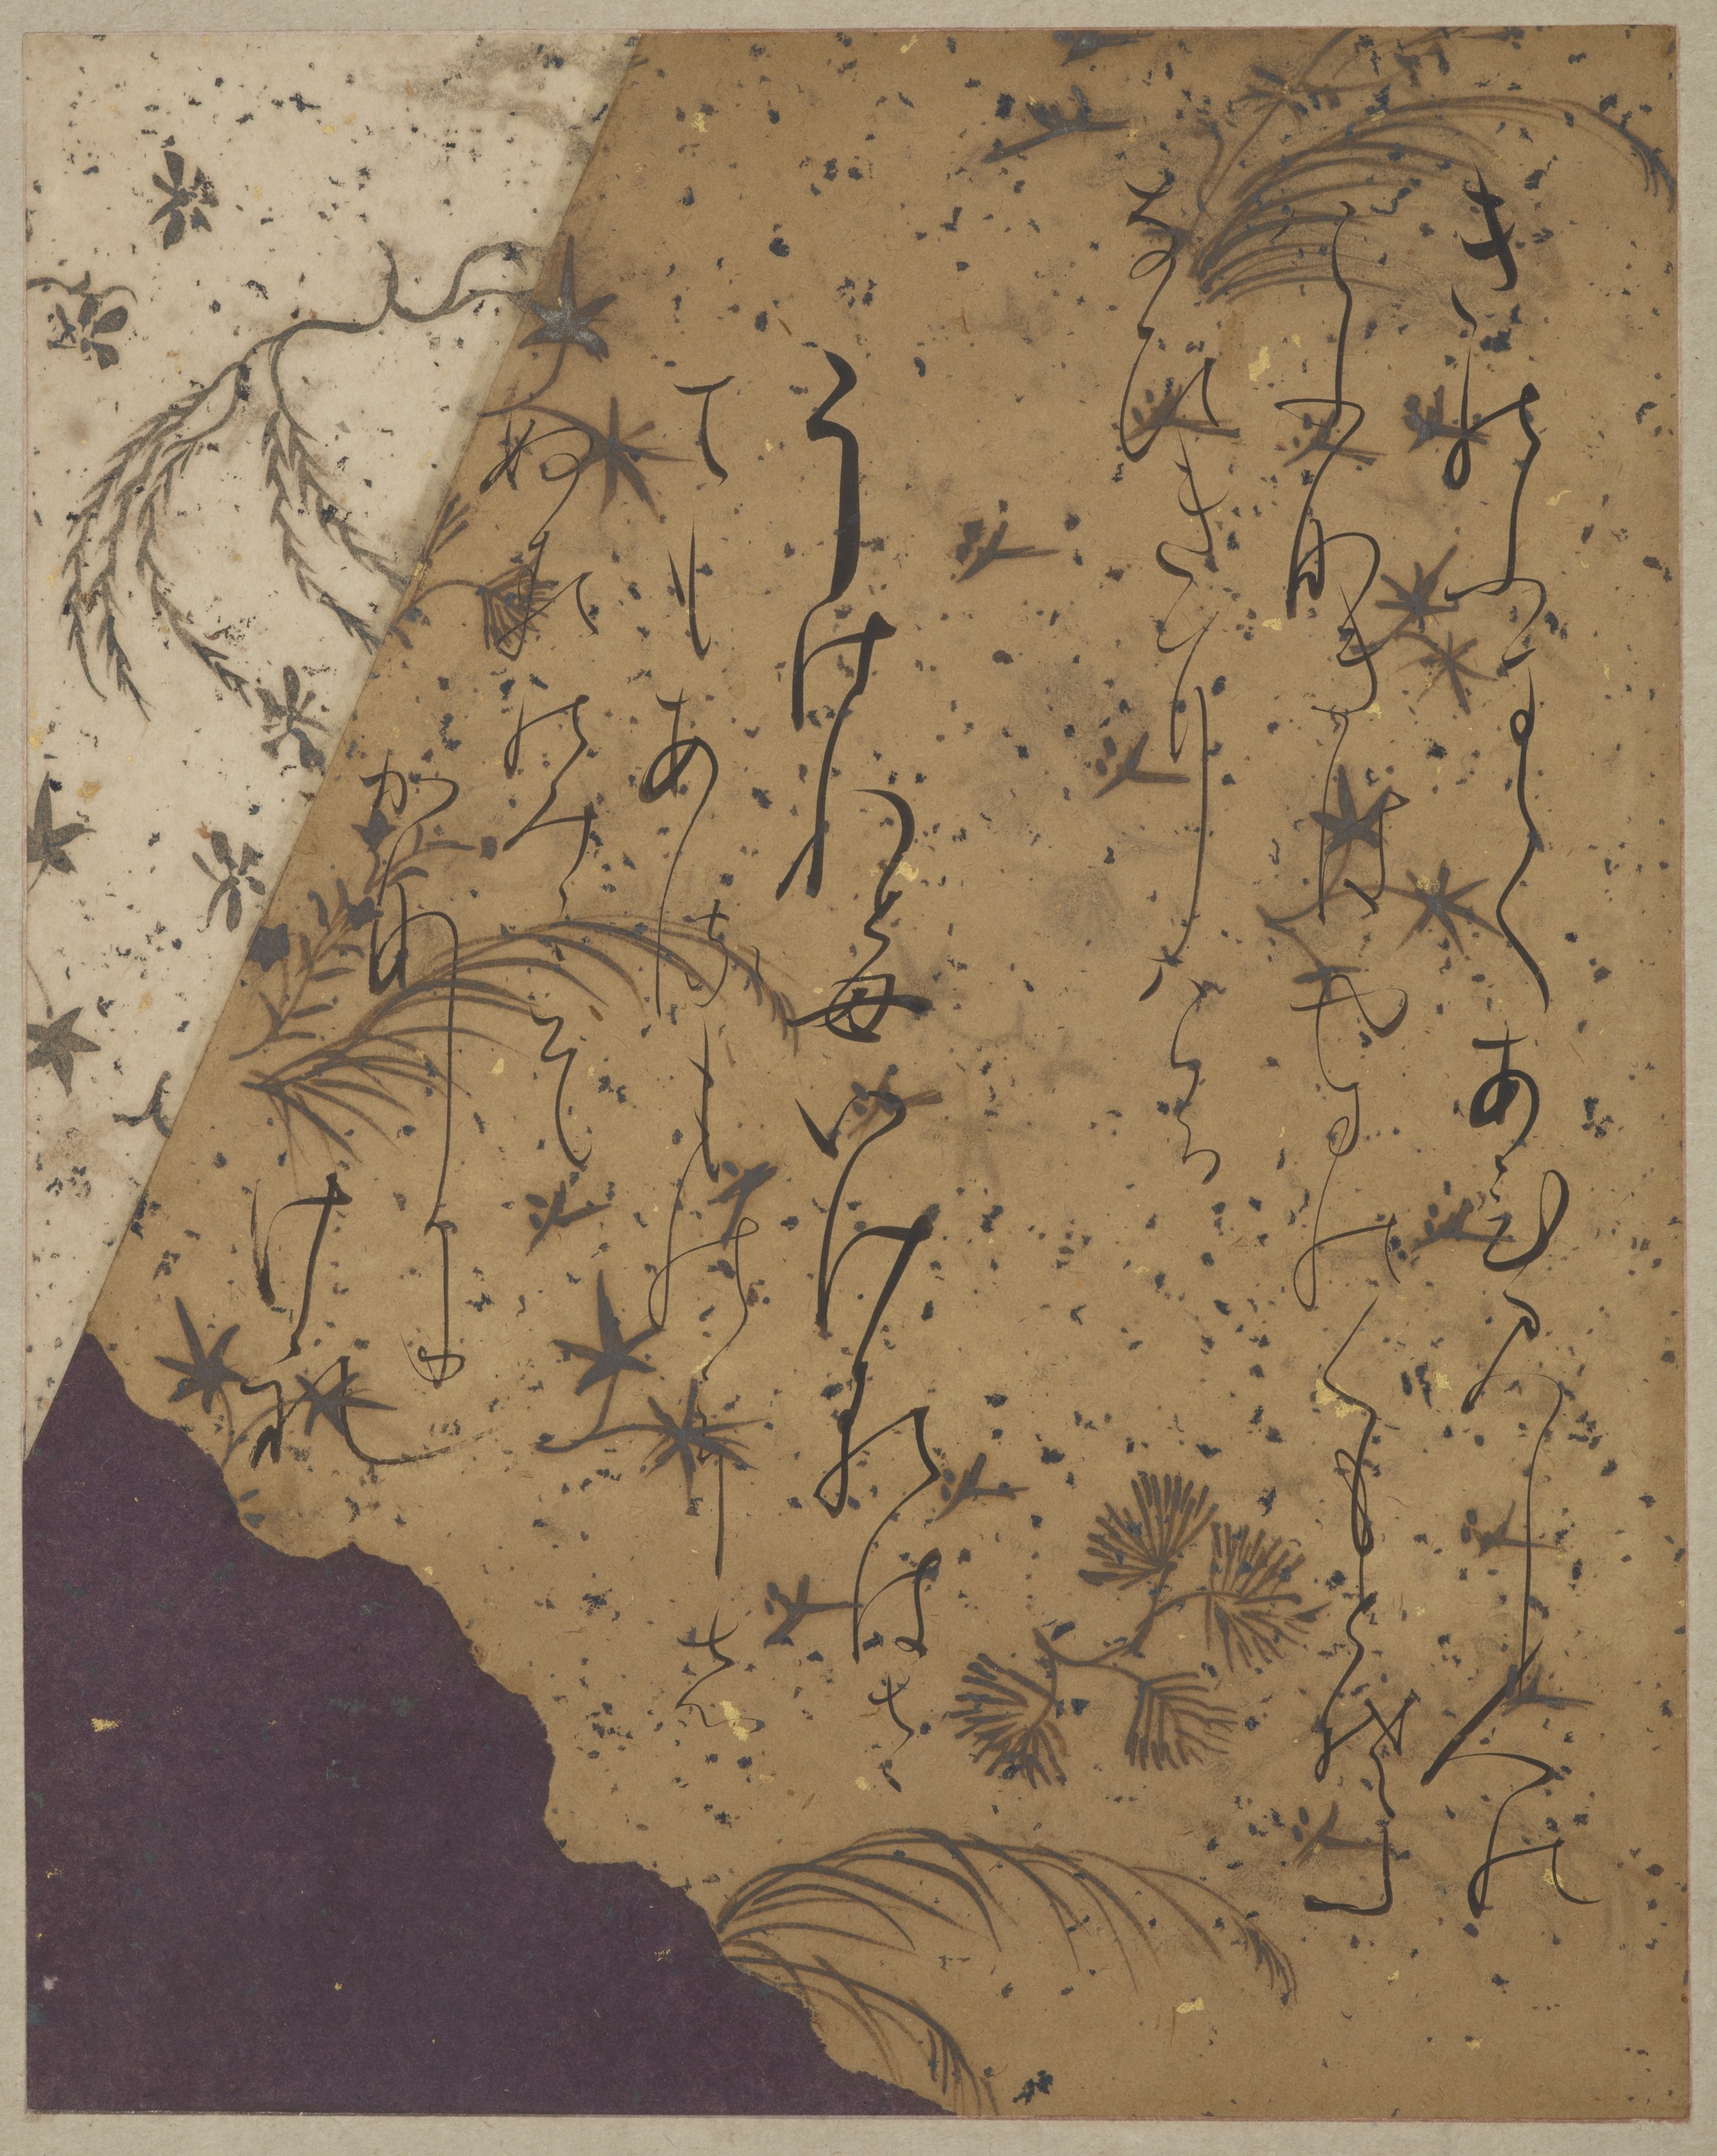 Strona z Ishiyama-gire by Fujiwara no Sadanobu (attrib.) - okres Heian, początek XII-go wieku - 131.8 x 44 cm 